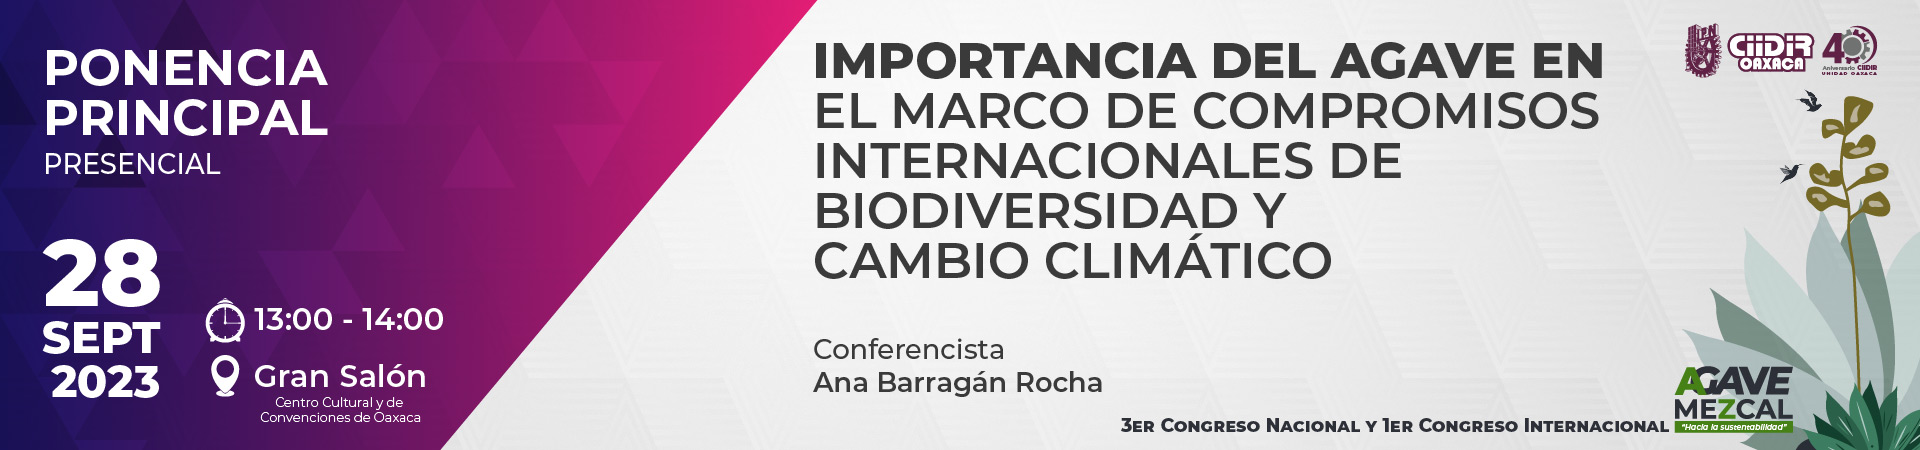 Importancia del Agave en el marco de compromisos internacionales de biodiversidad y cambio climático.